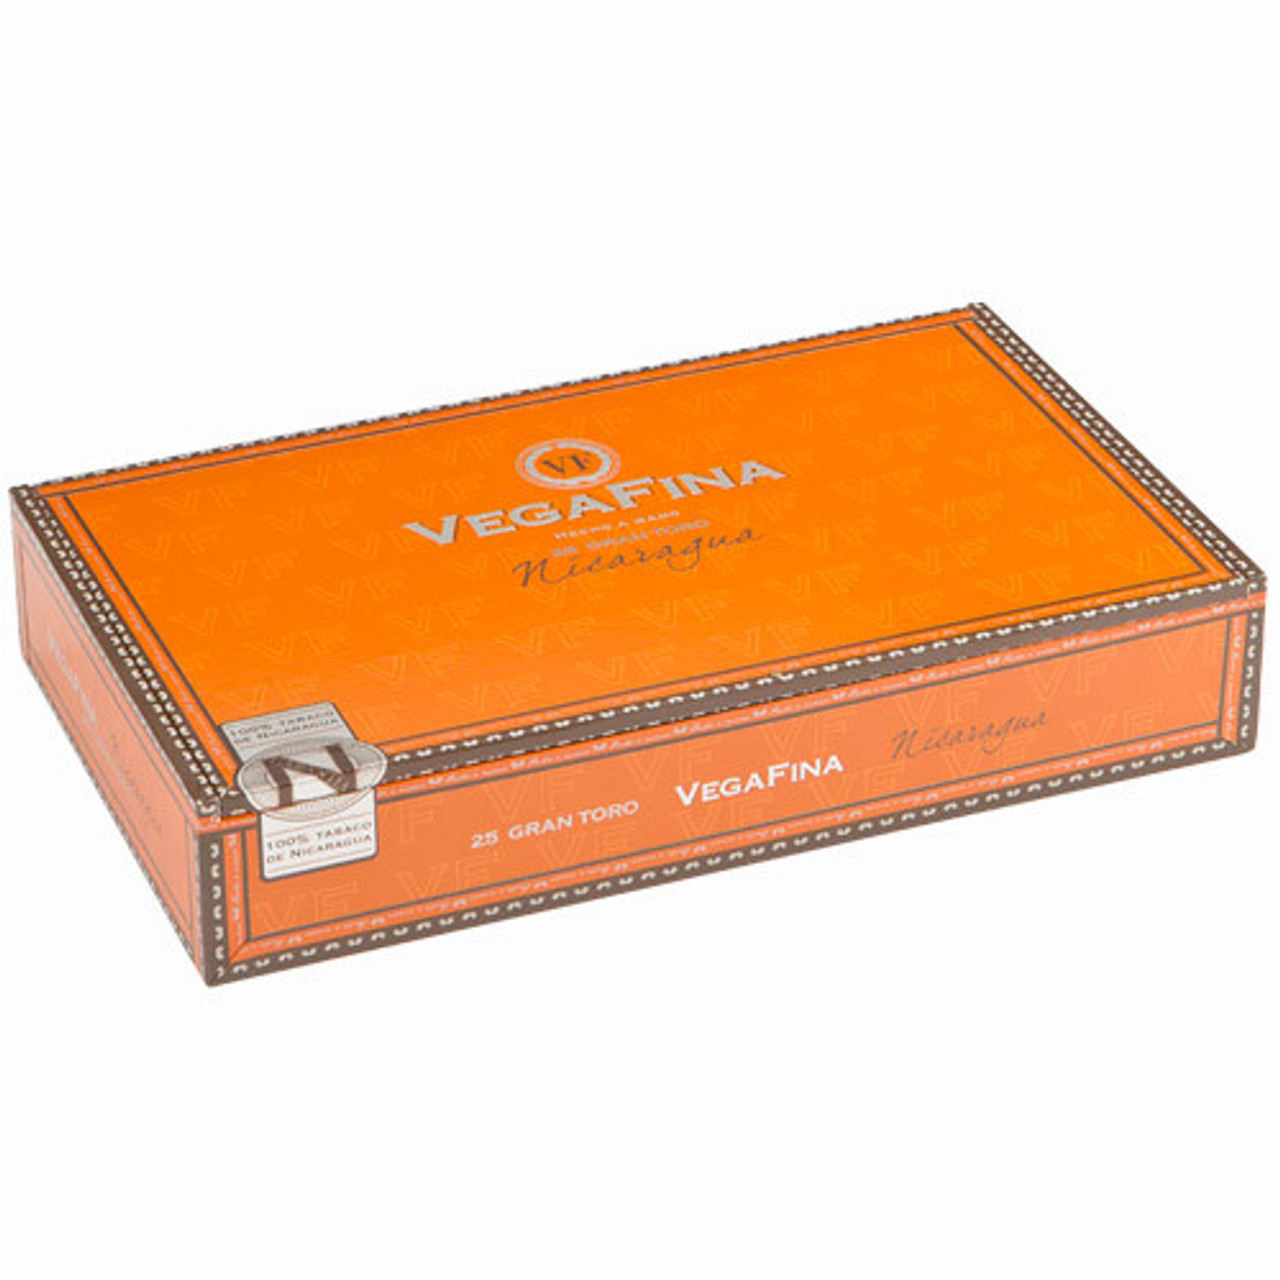 VegaFina Nicaragua Robusto Cigars - 5 x 50 (Box of 25) *Box